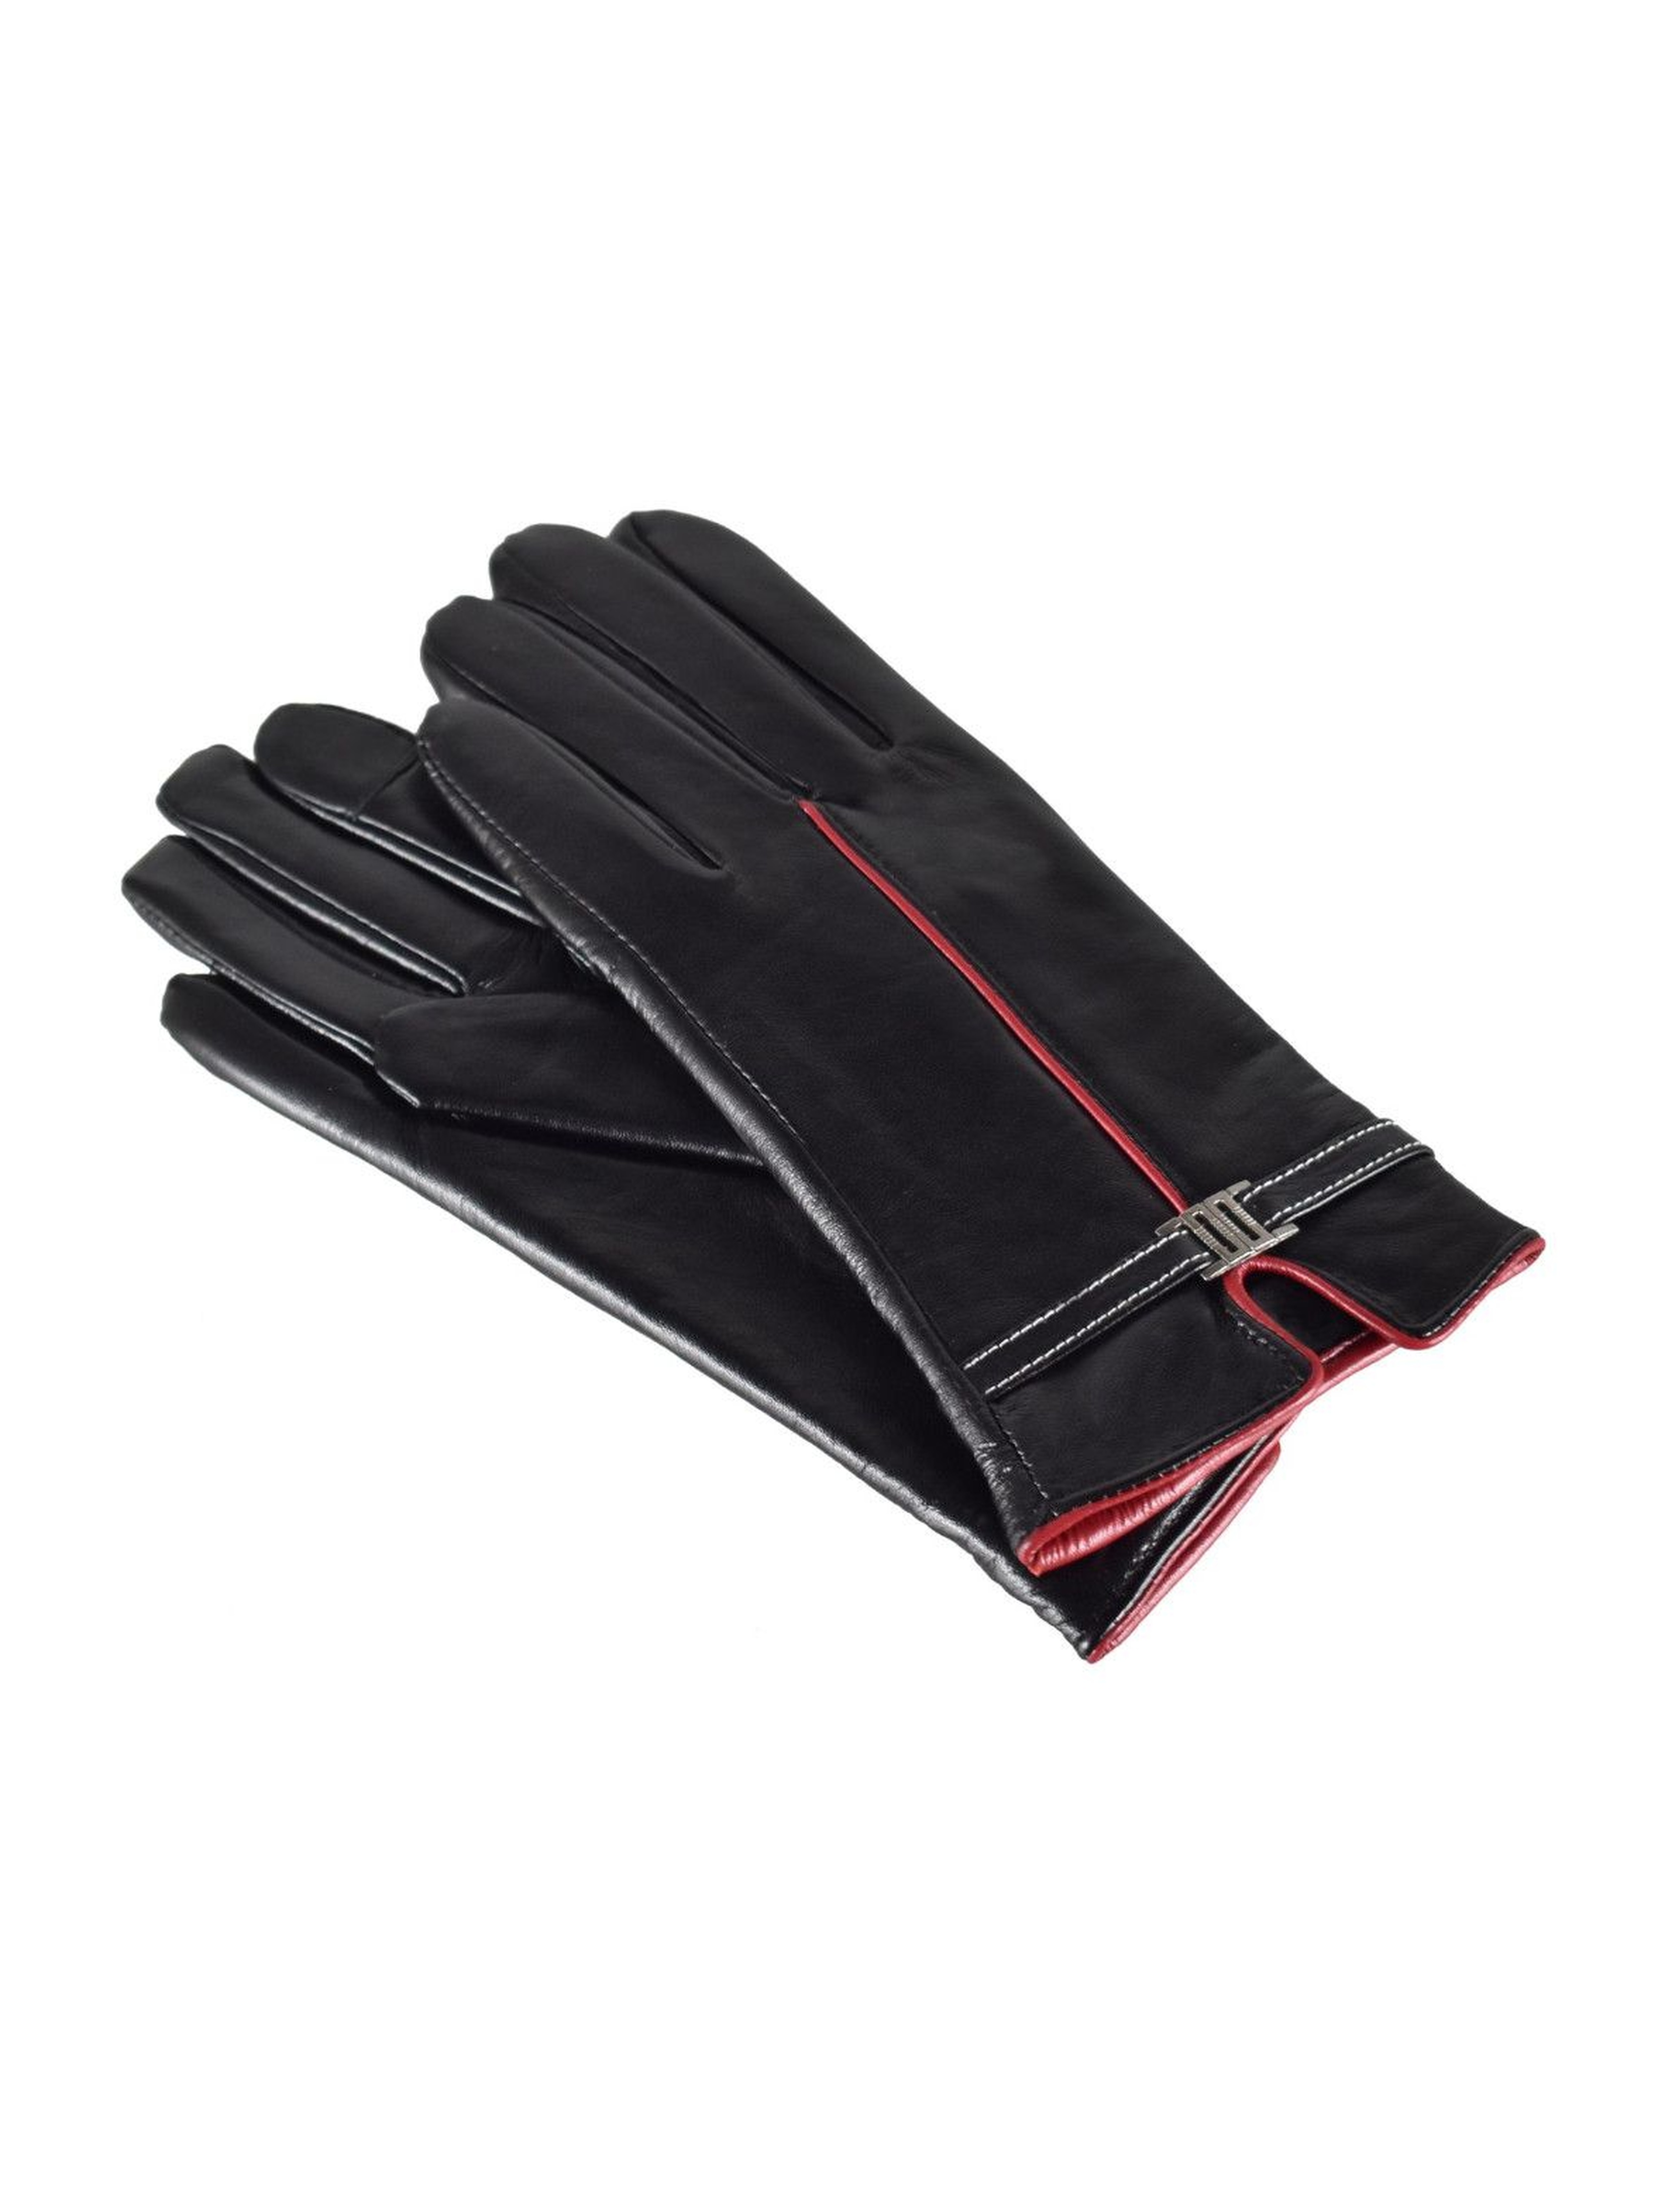 Rękawiczki damskie skórzane antybakteryjne - czarne z czerwoną wstawką